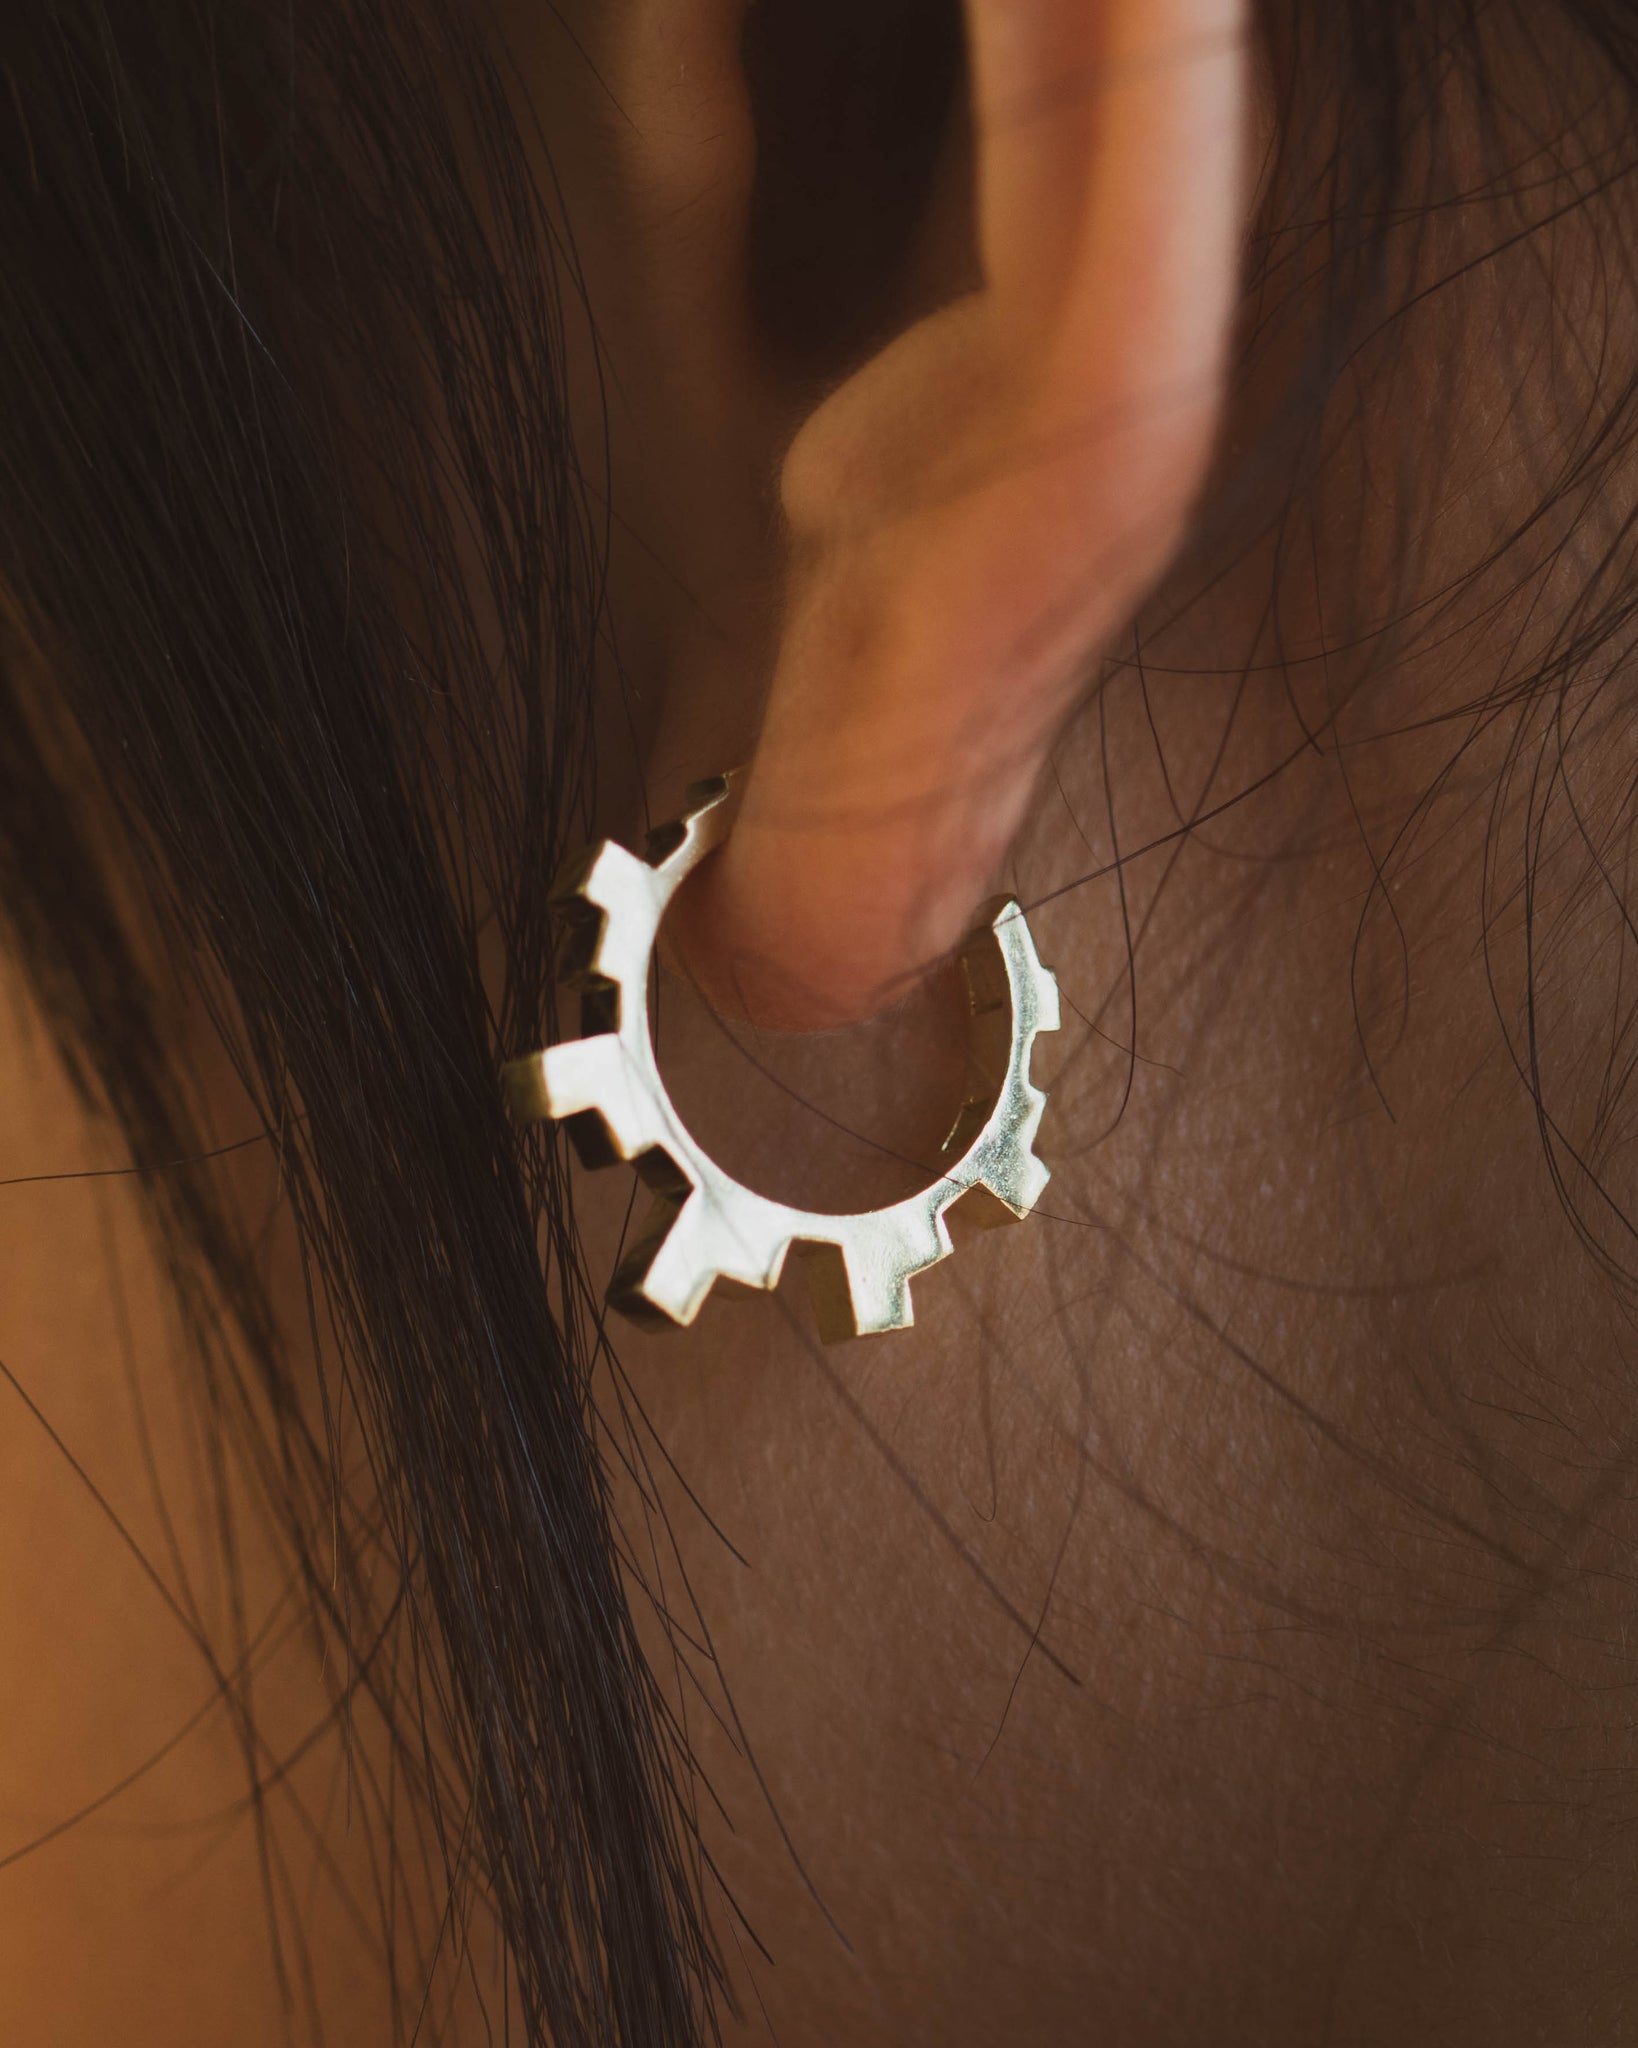 Gold Art Deco Hoop Earrings on model's ear